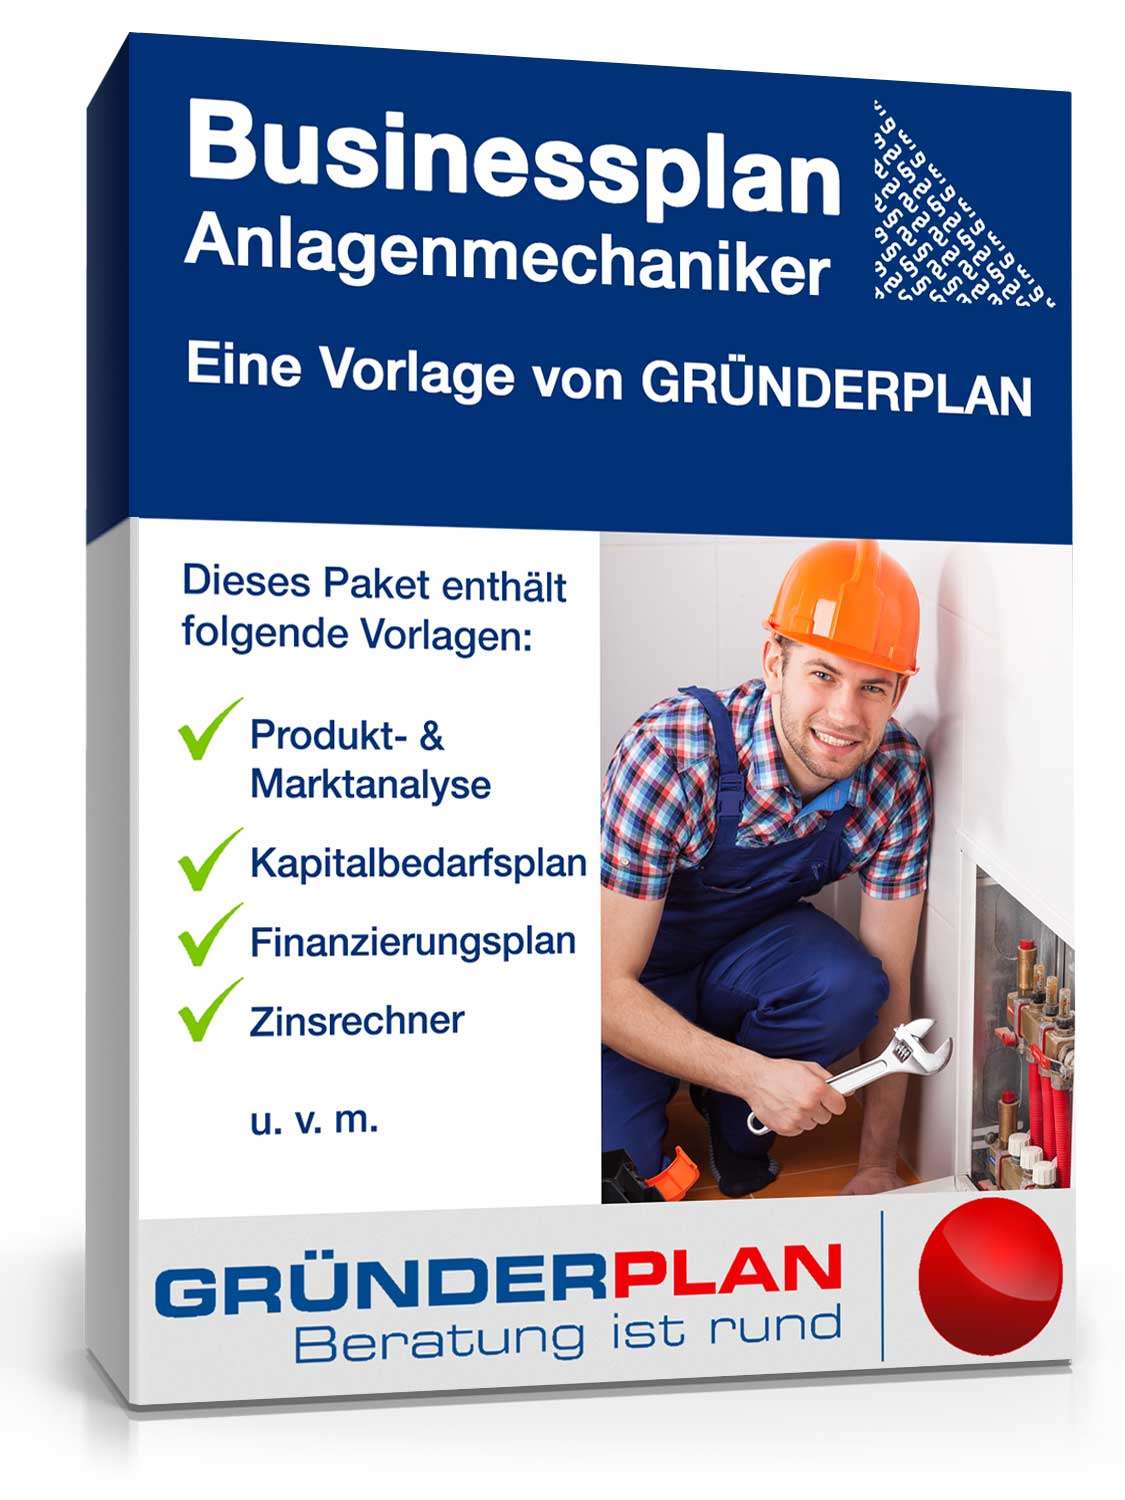 Hauptbild des Produkts: Businessplan Anlagenmechaniker für Sanitär-, Heizungs- & Klimaanlagen von Gründerplan